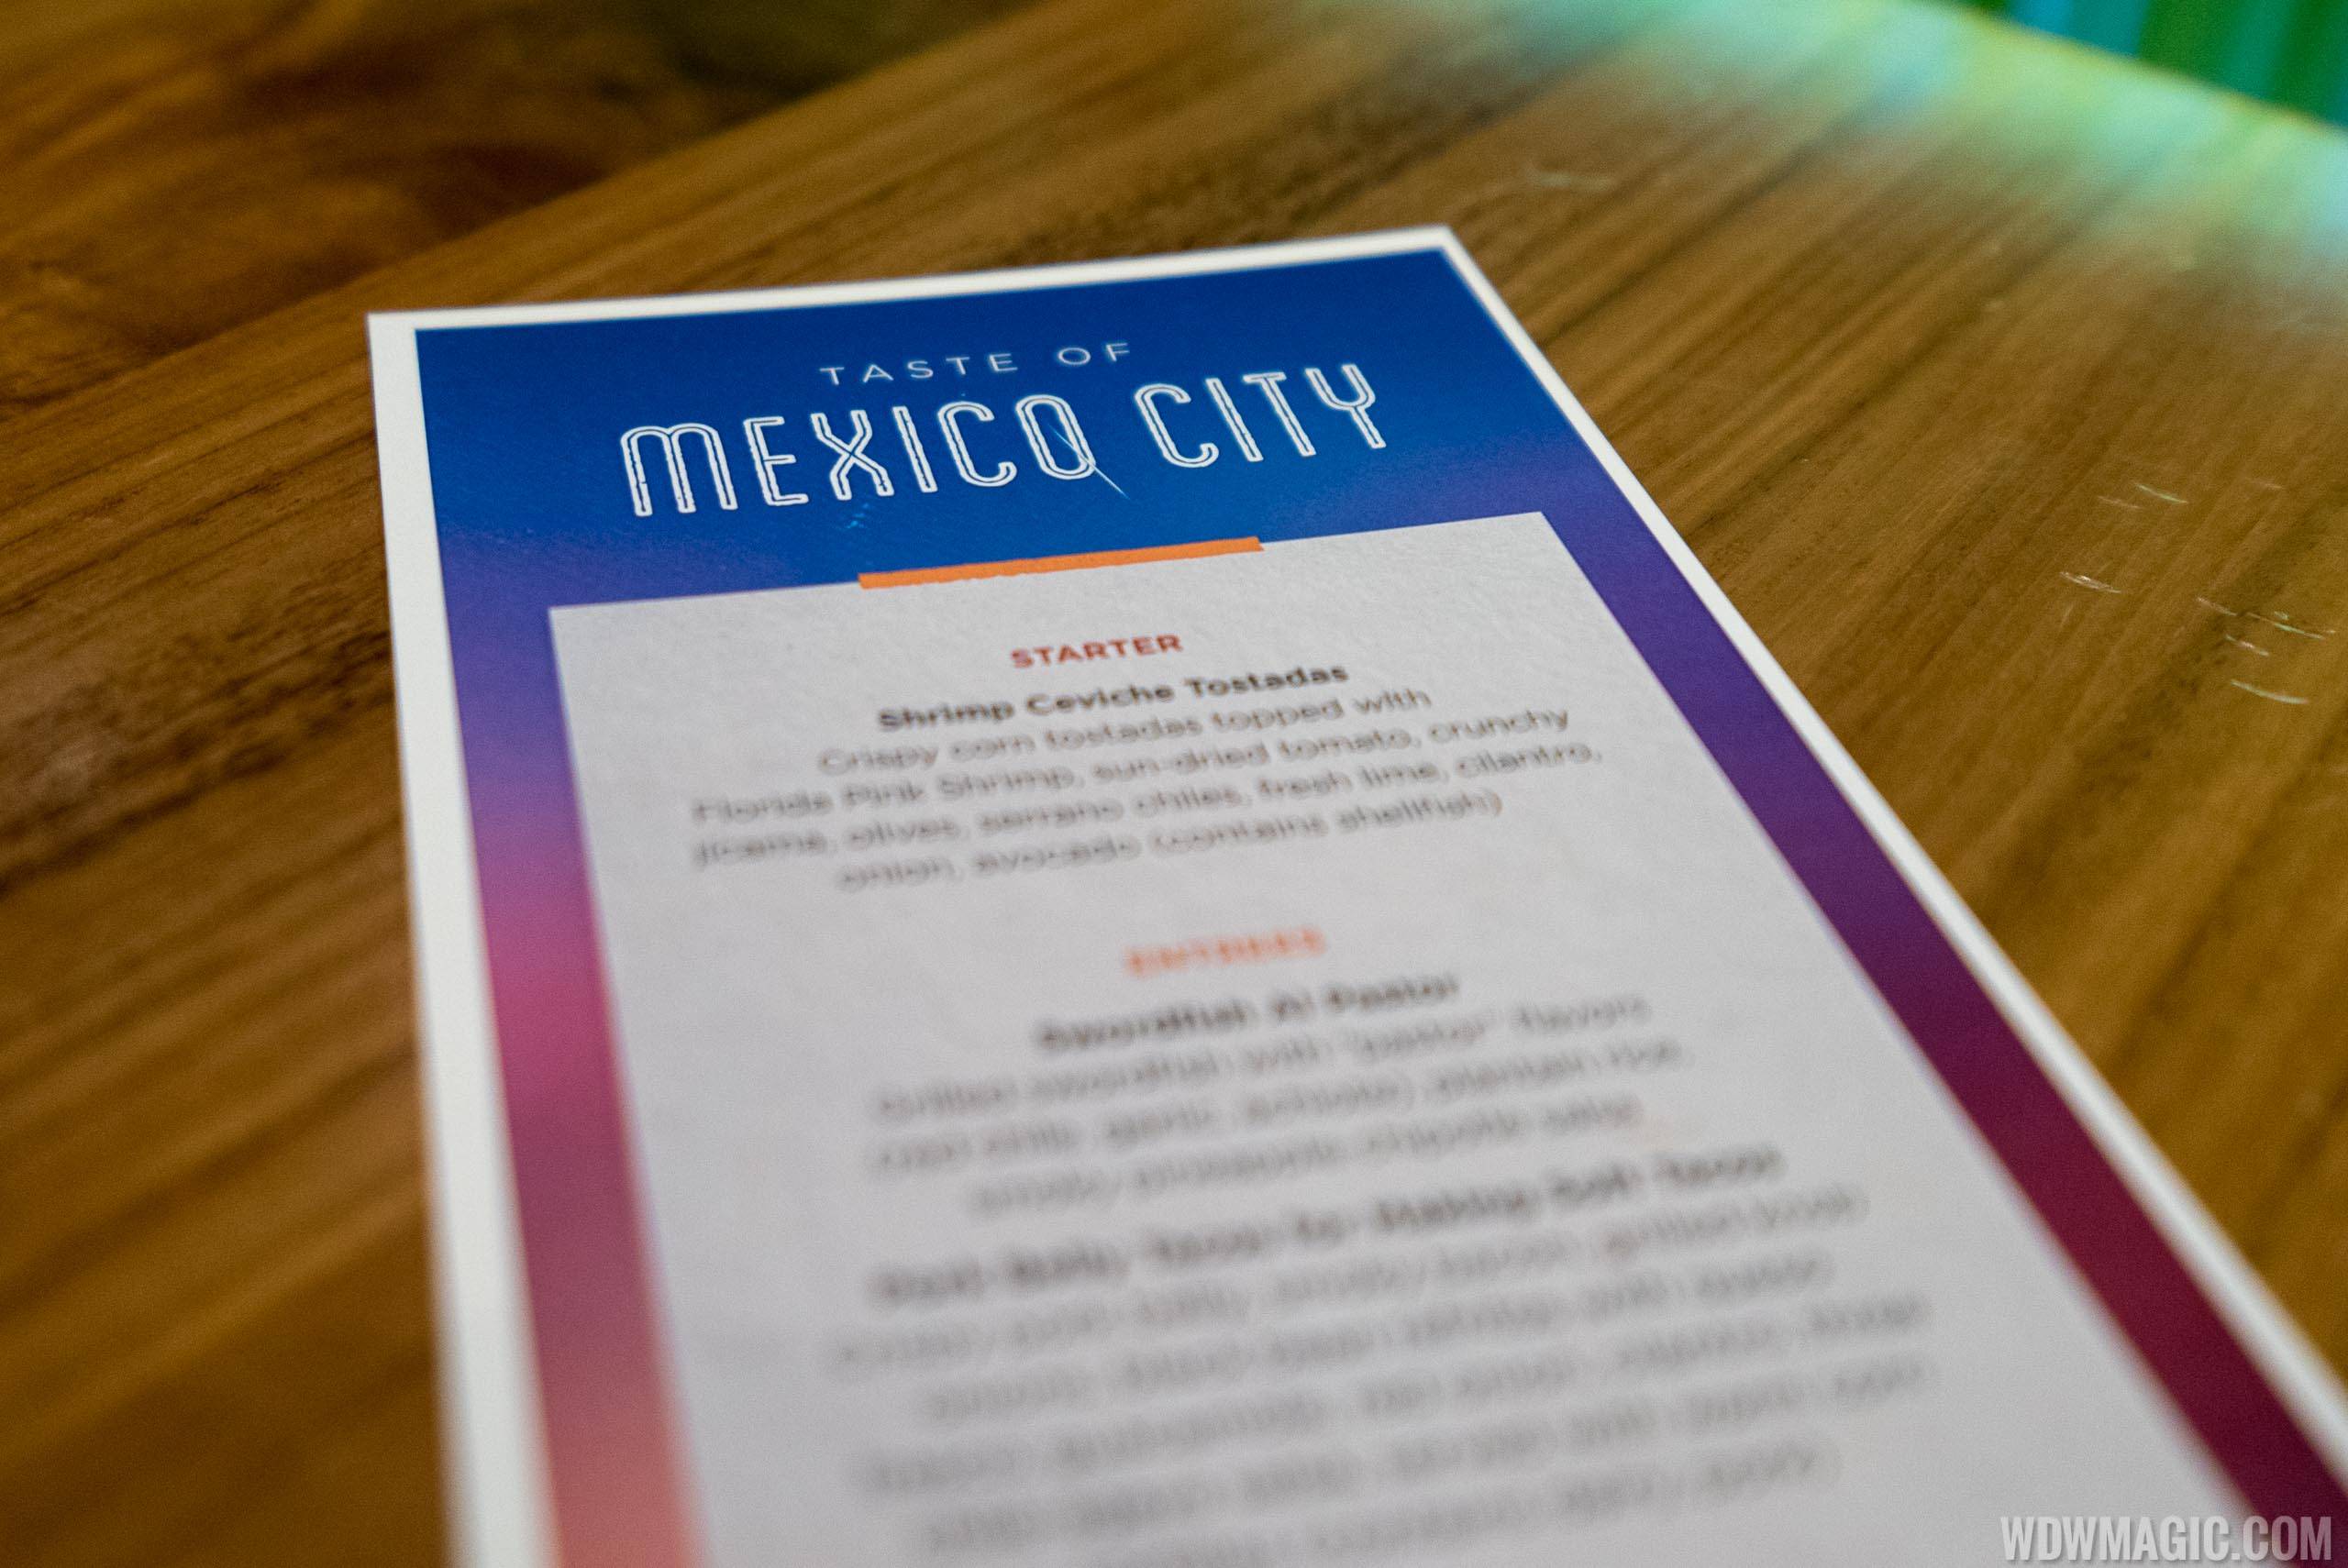 Frontera Cocina - Taste of Mexico City menu 2019